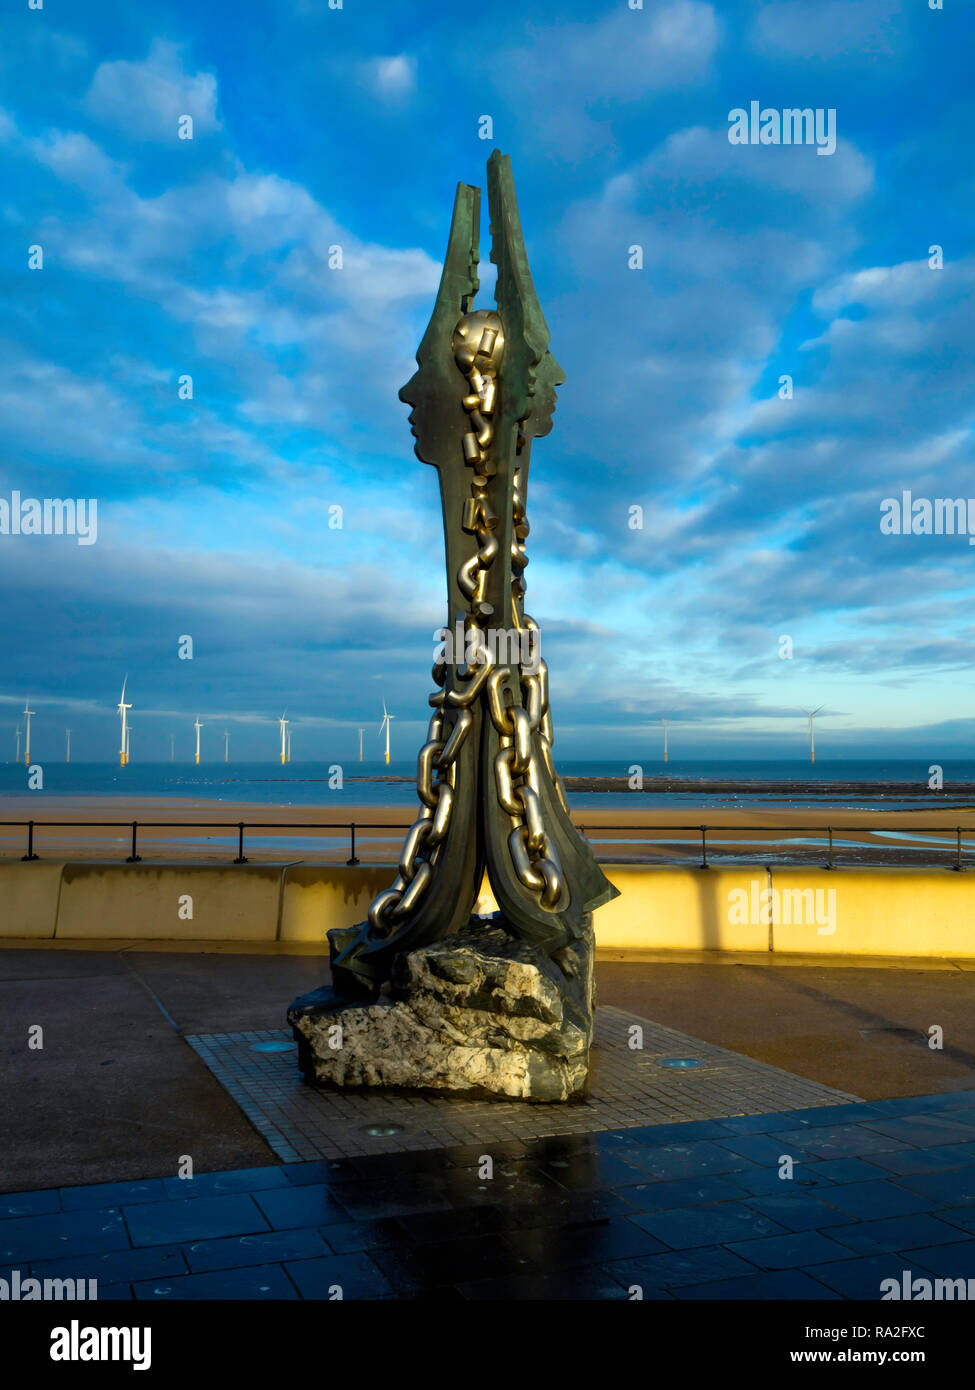 Un morceau d'art public sur le front de mer Sinterlation Redcar par le sculpteur Ian Randall célèbre la tradition sidérurgique locale Banque D'Images